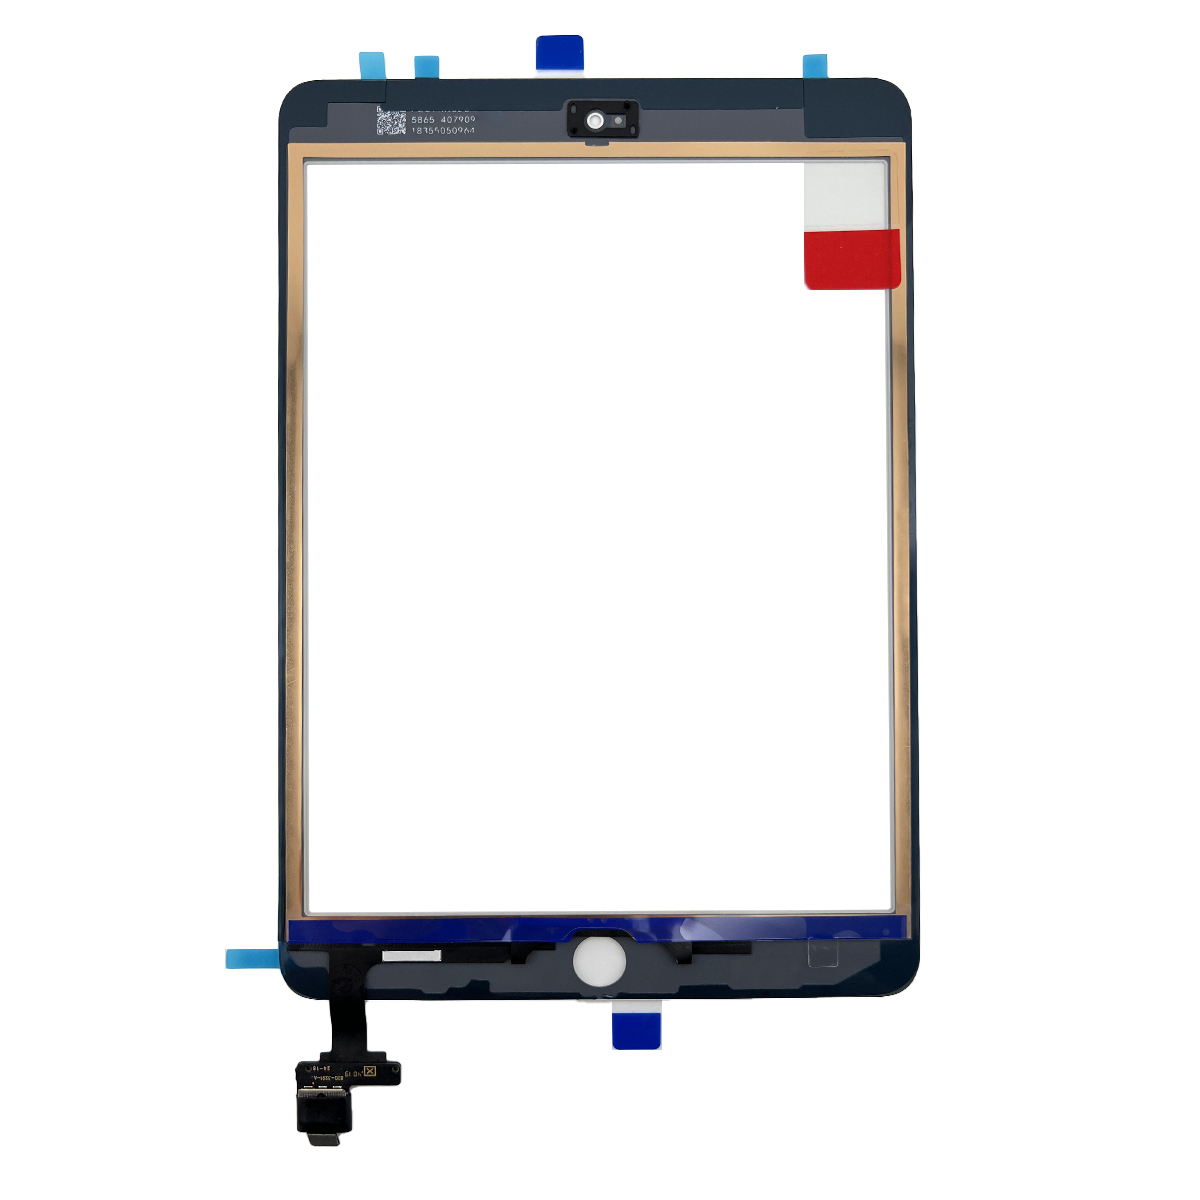 即日発送! iPad mini 第3世代 A1599 A1600 フロントパネル 白 タッチスクリーン交換 デジタイザ修理 リペアパーツ 画面 ガラス 割れ 工具付_画像2